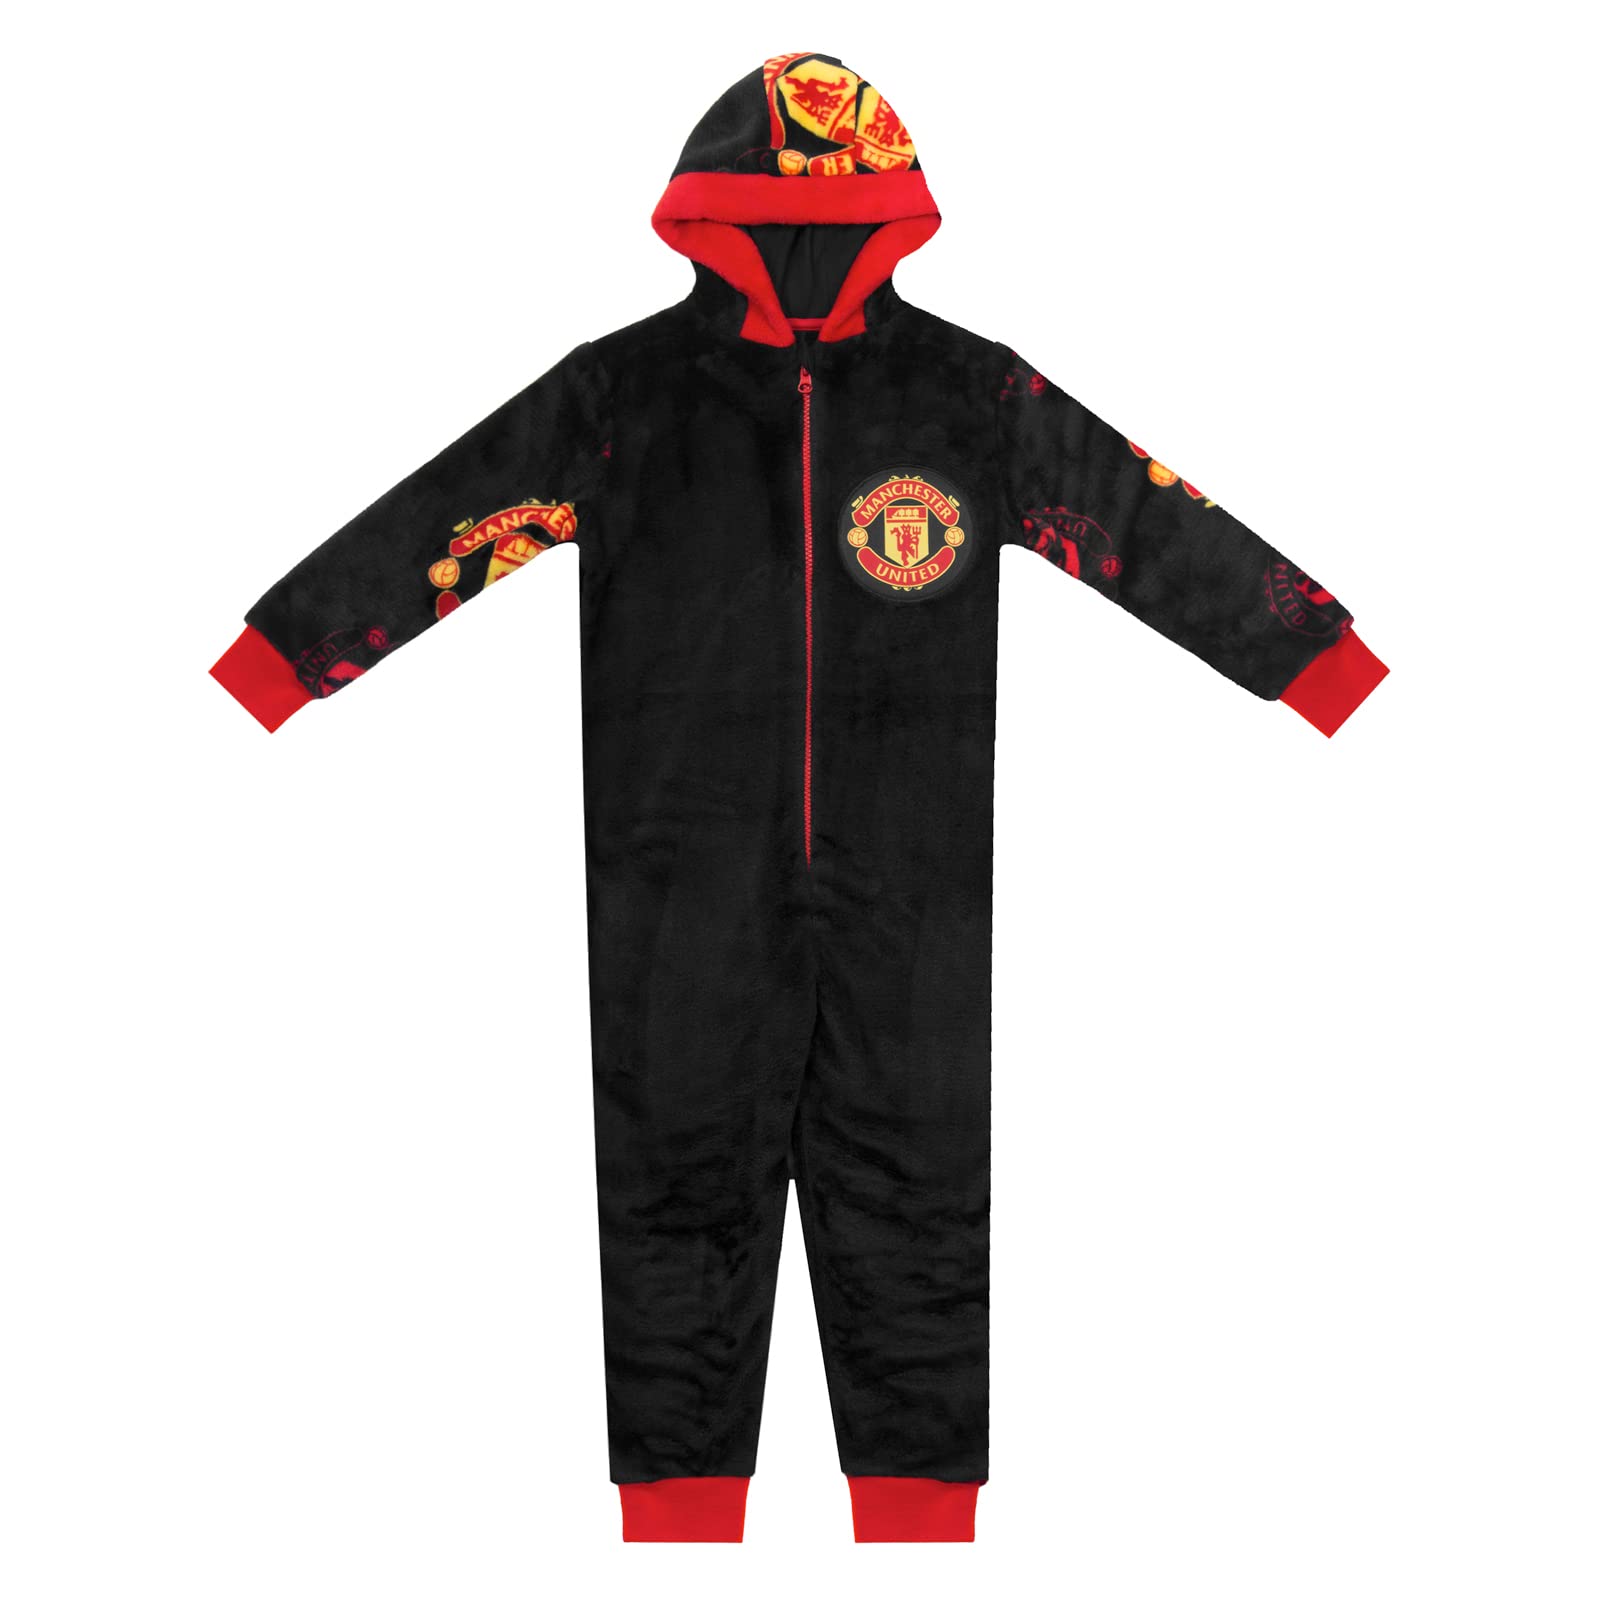 Manchester United FC - Jungen Schlafanzug-Einteiler aus Fleece - Offizielles Merchandise - Geschenk für Fußballfans - 11-12 Jahre